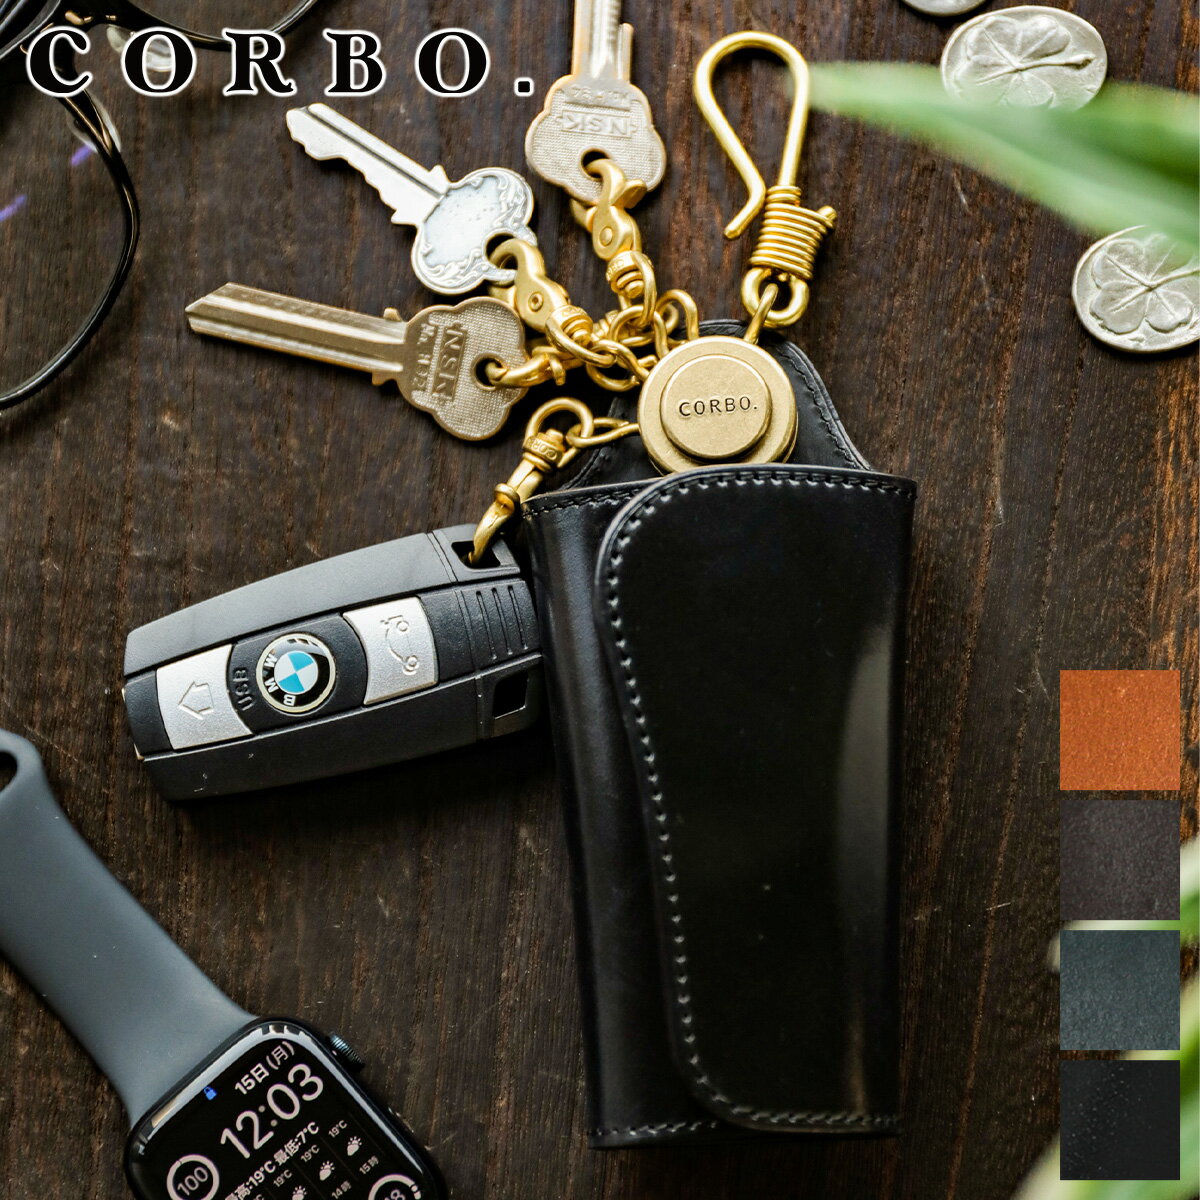 【選べる実用的ノベルティ付】 CORBO. コルボ キーケース-SLATE- Horween shell cordovan スレート ホーウィンシェルコードバンキーケース 1LL-1502メンズ スマートキー キーホルダー Car key カーキー 車 小物 日本製